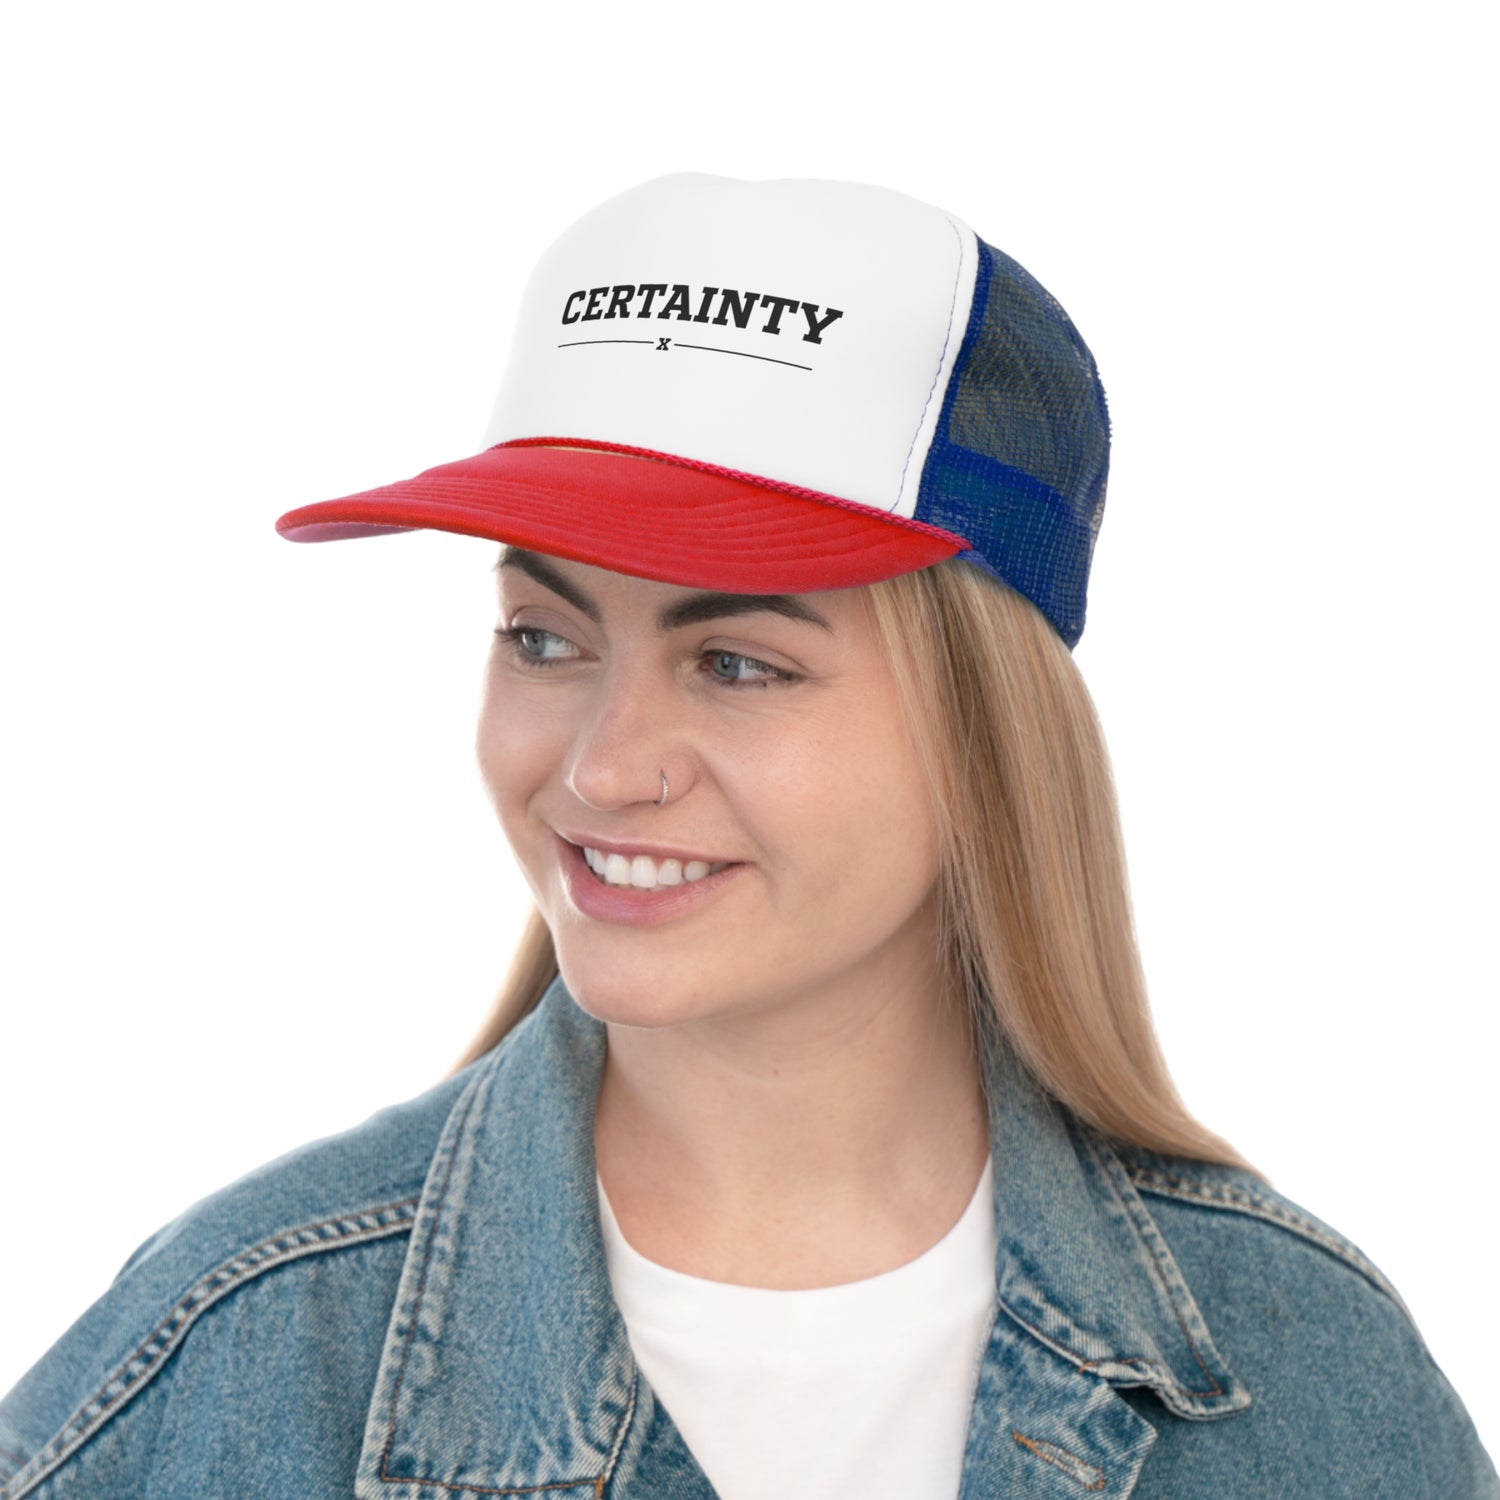 Certainty Trucker Cap